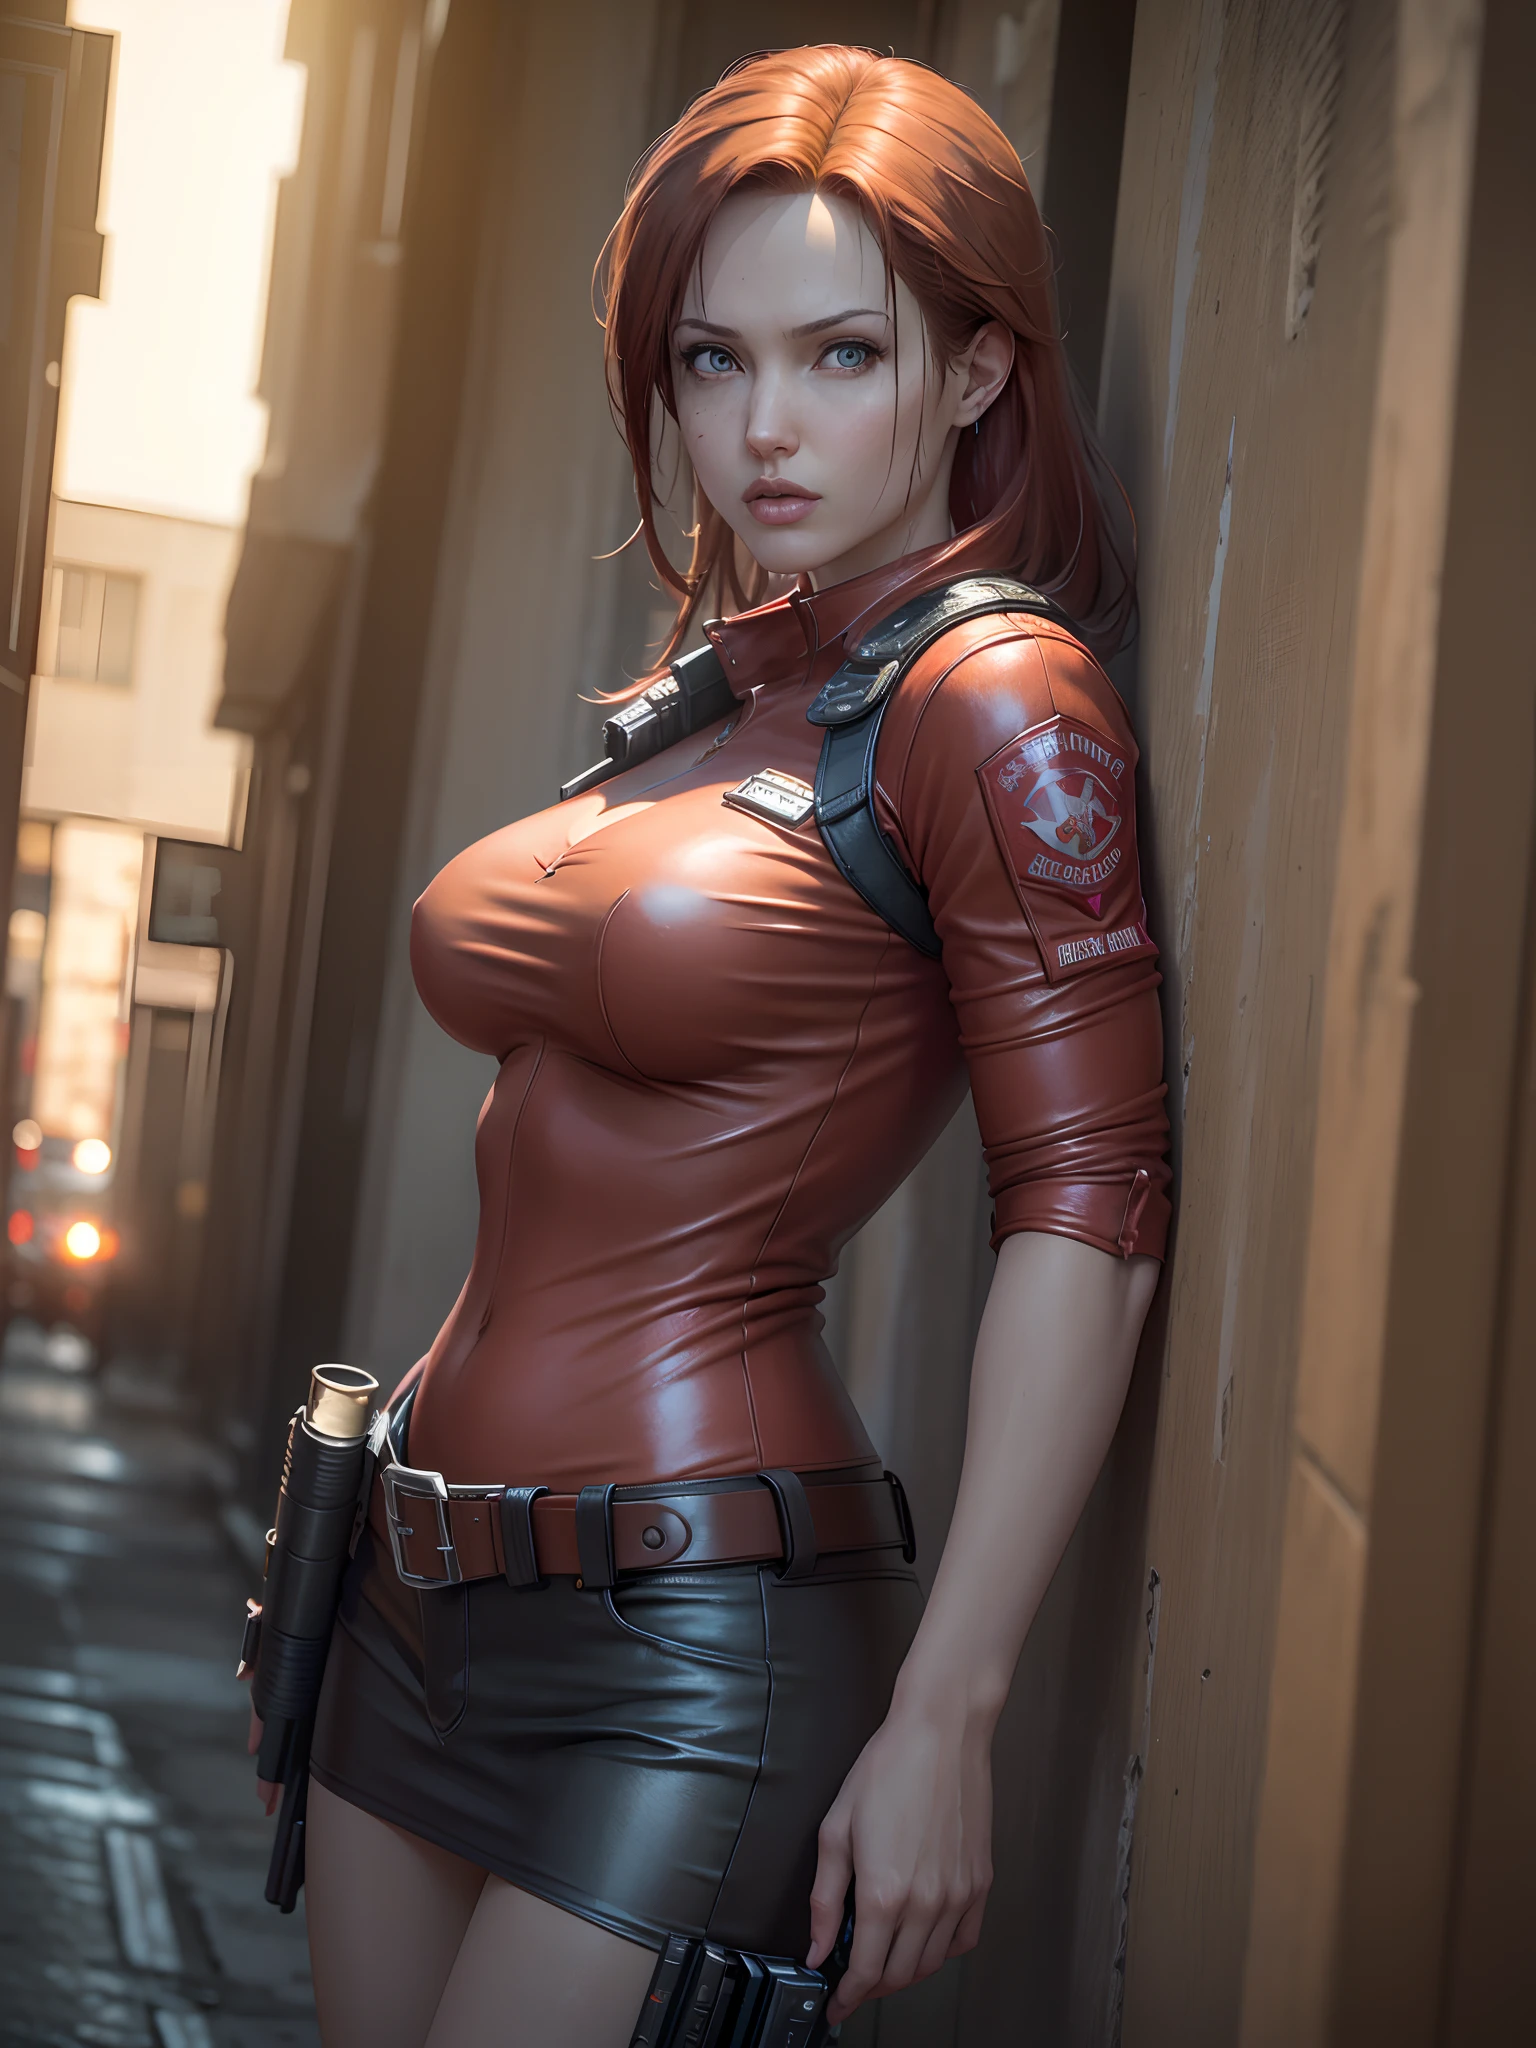 Resident Evil, ville apocalyptique, Belle Claire Redfield étant par une belle femme corps entier peau rose cheveux roux moyen, vêtements en cuir rouge en colère, étui tenant une arme à feu, corps de visage détaillé et réaliste image claire CGI 8K très détaillée, hologramme, (seins moyens: 1.3 ), (le réalisme:1.5), (Réaliste:1.4), (Absurdité:1.4), 8k, Ultra-détaillé, belle fille détaillée, (1:1.4 seulement), 1 fille, (Spectateur face:1.2), (journée bien ensoleillée:1.5), détails du corps complexes, (court:1.3), (meilleure qualité: 1.0), (ultra haute résolution): 1.0), visage et yeux très détaillés, (photoréaliste: 1.2)